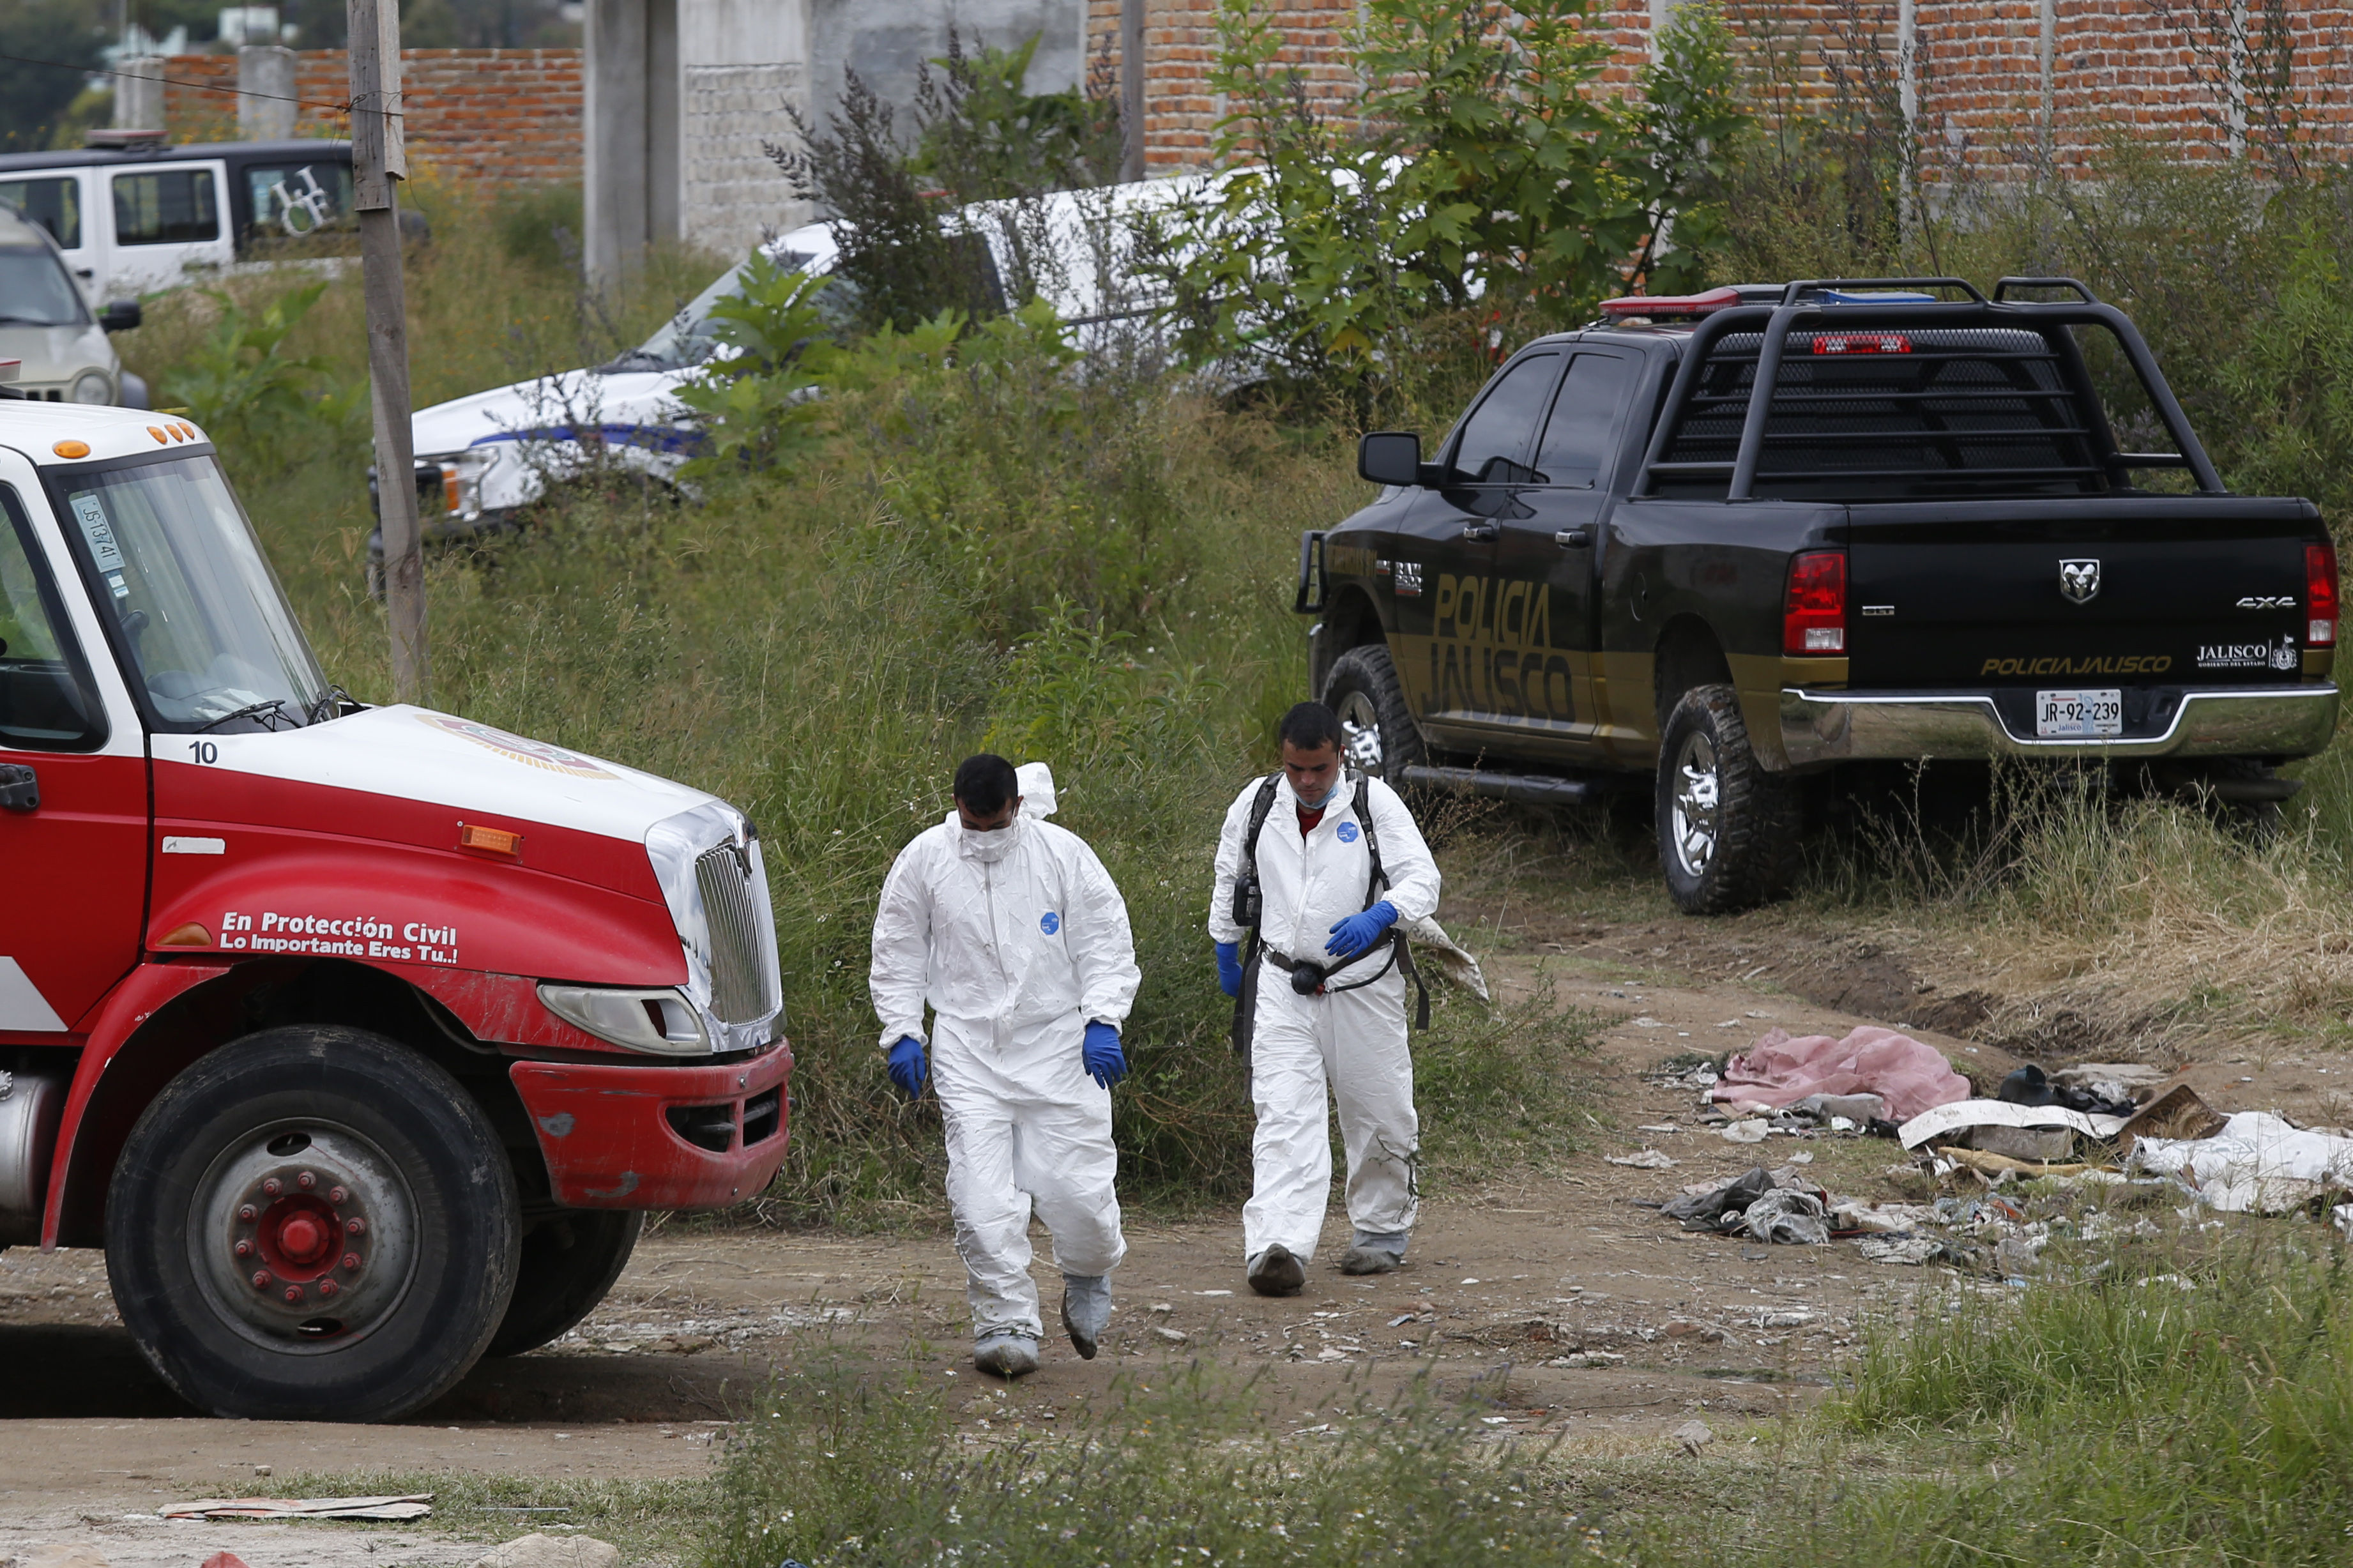  Hallan dos fosas clandestinas con 10 cuerpos en Tonalá, Jalisco